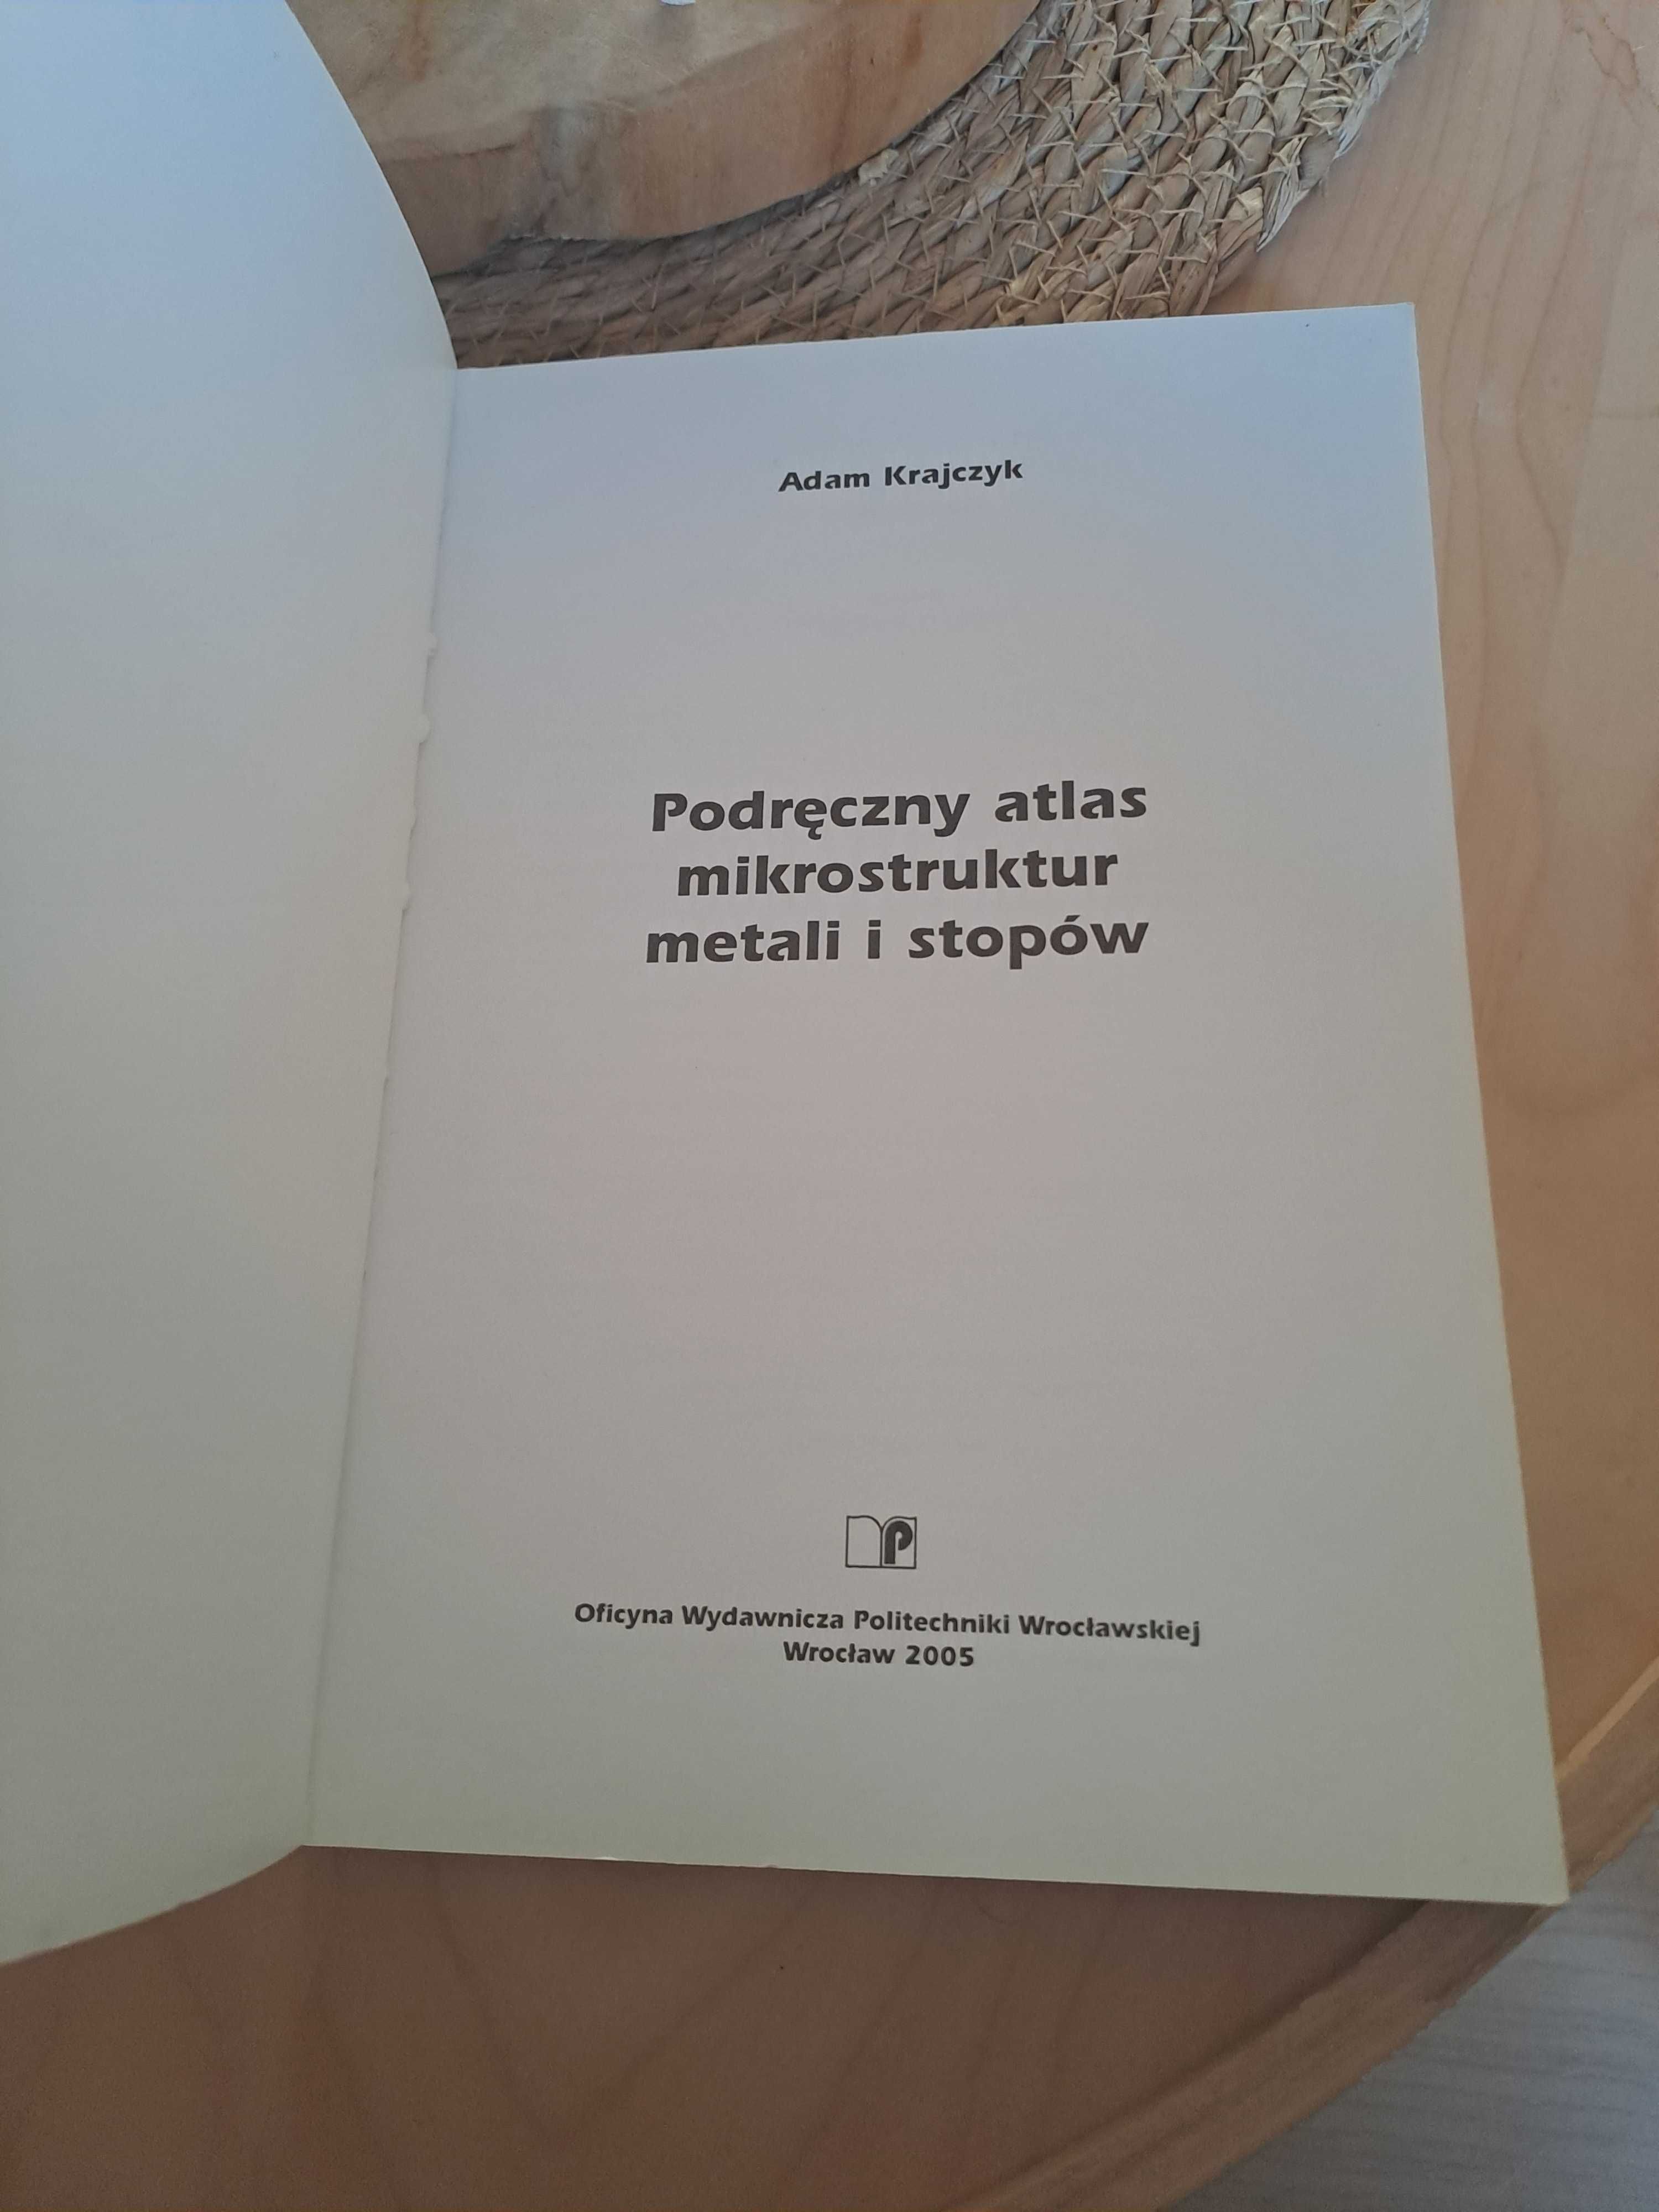 Podręczny atlas mikrostruktur metali i stopów asam Ratajczyk 2005